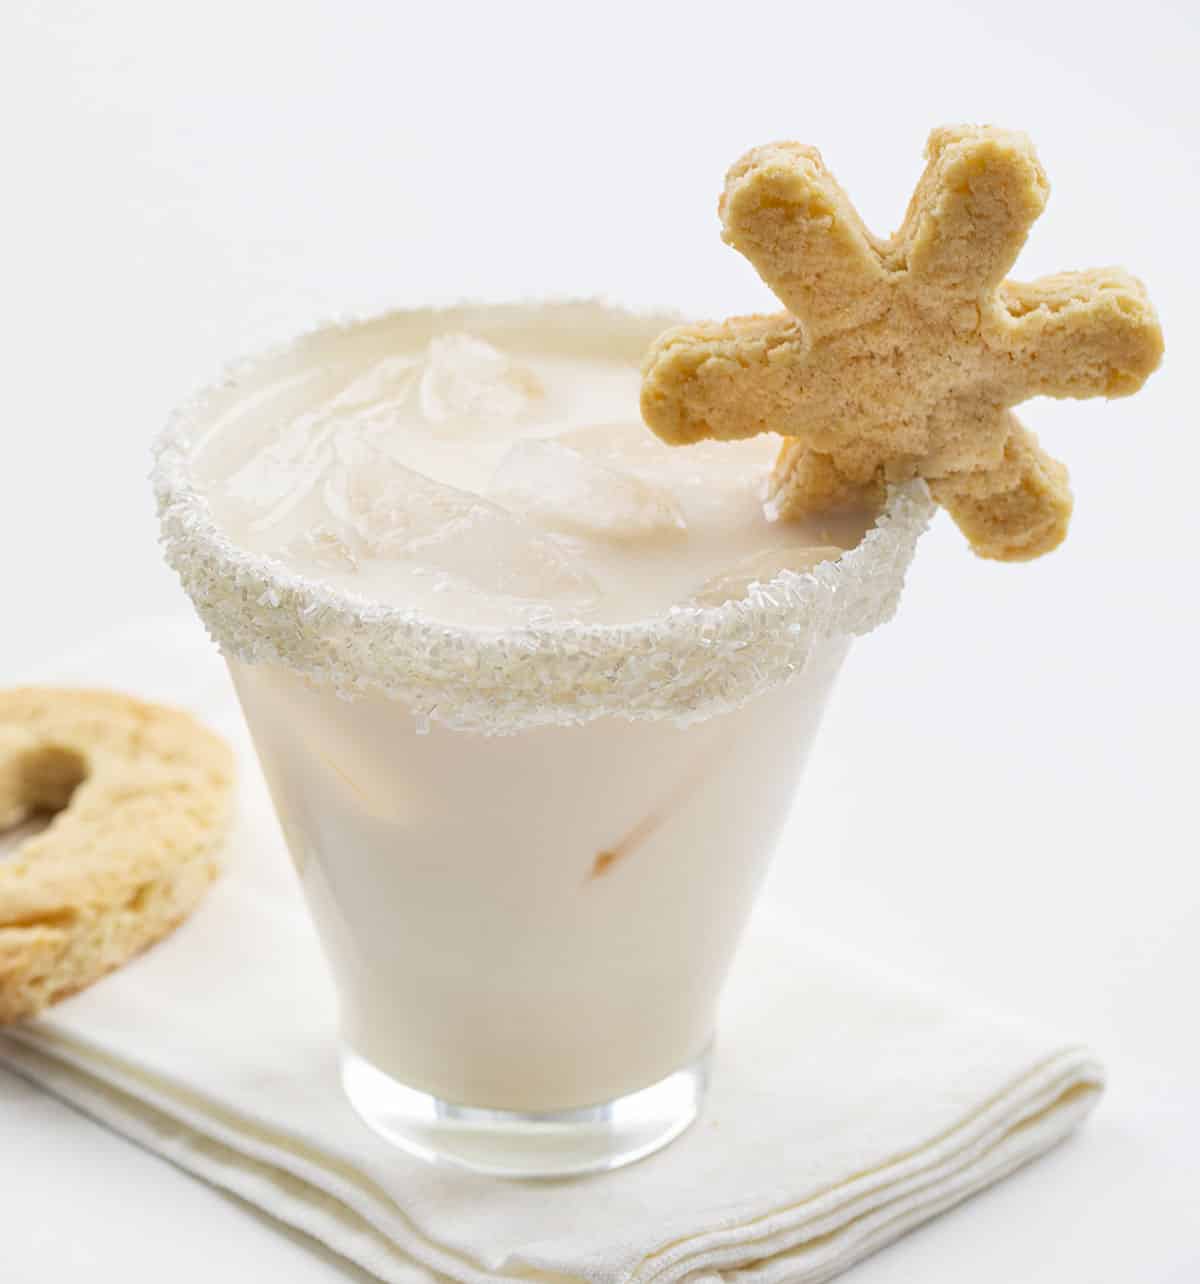 糖曲奇饼鸡尾酒 - 糖曲奇饼马蒂尼鸡尾酒用在边缘的糖曲奇饼星